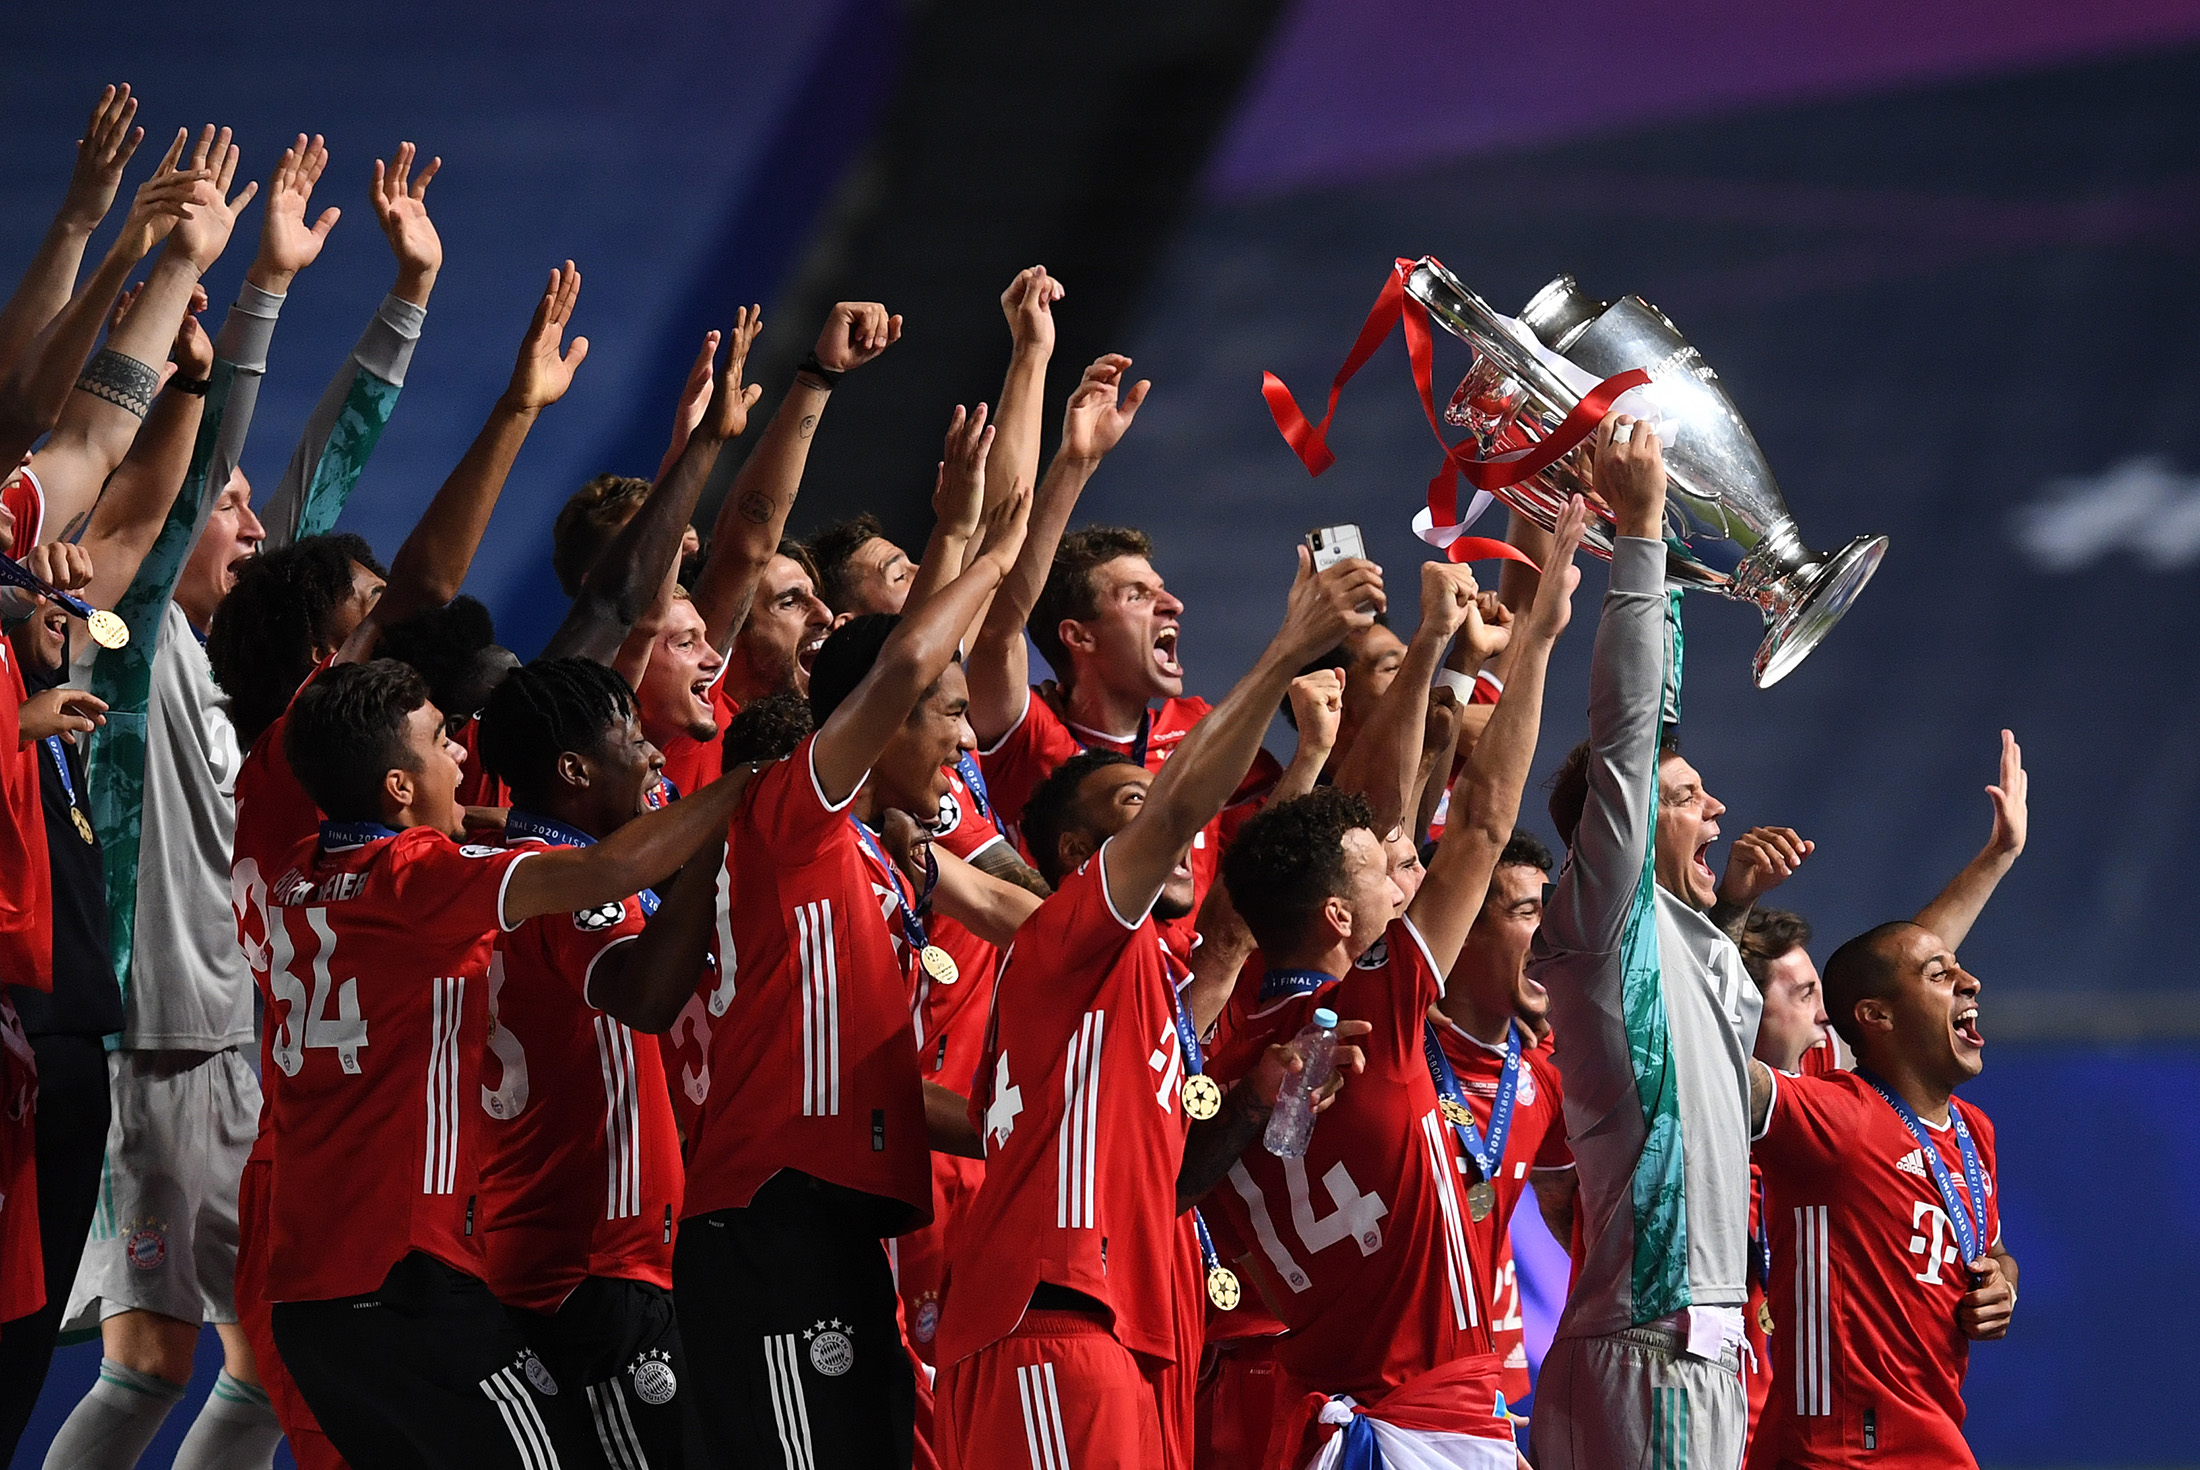 2 x Schal Bayern M Final Champions League 2020 Lisbon Final Super Cup Budapeste 